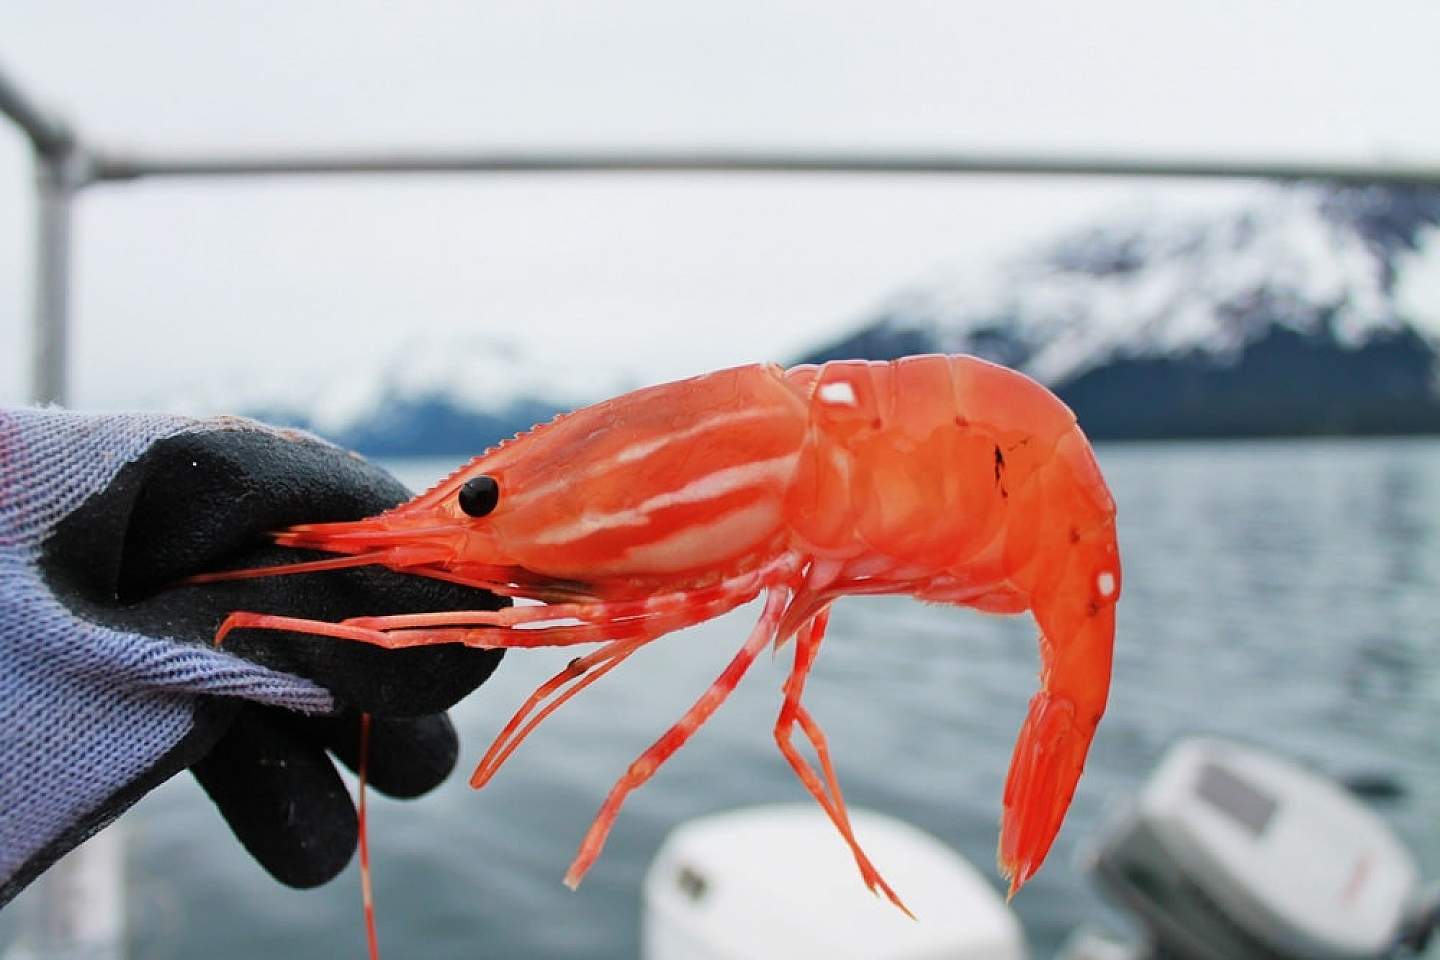 Don't skimp on Alaska's shrimp!